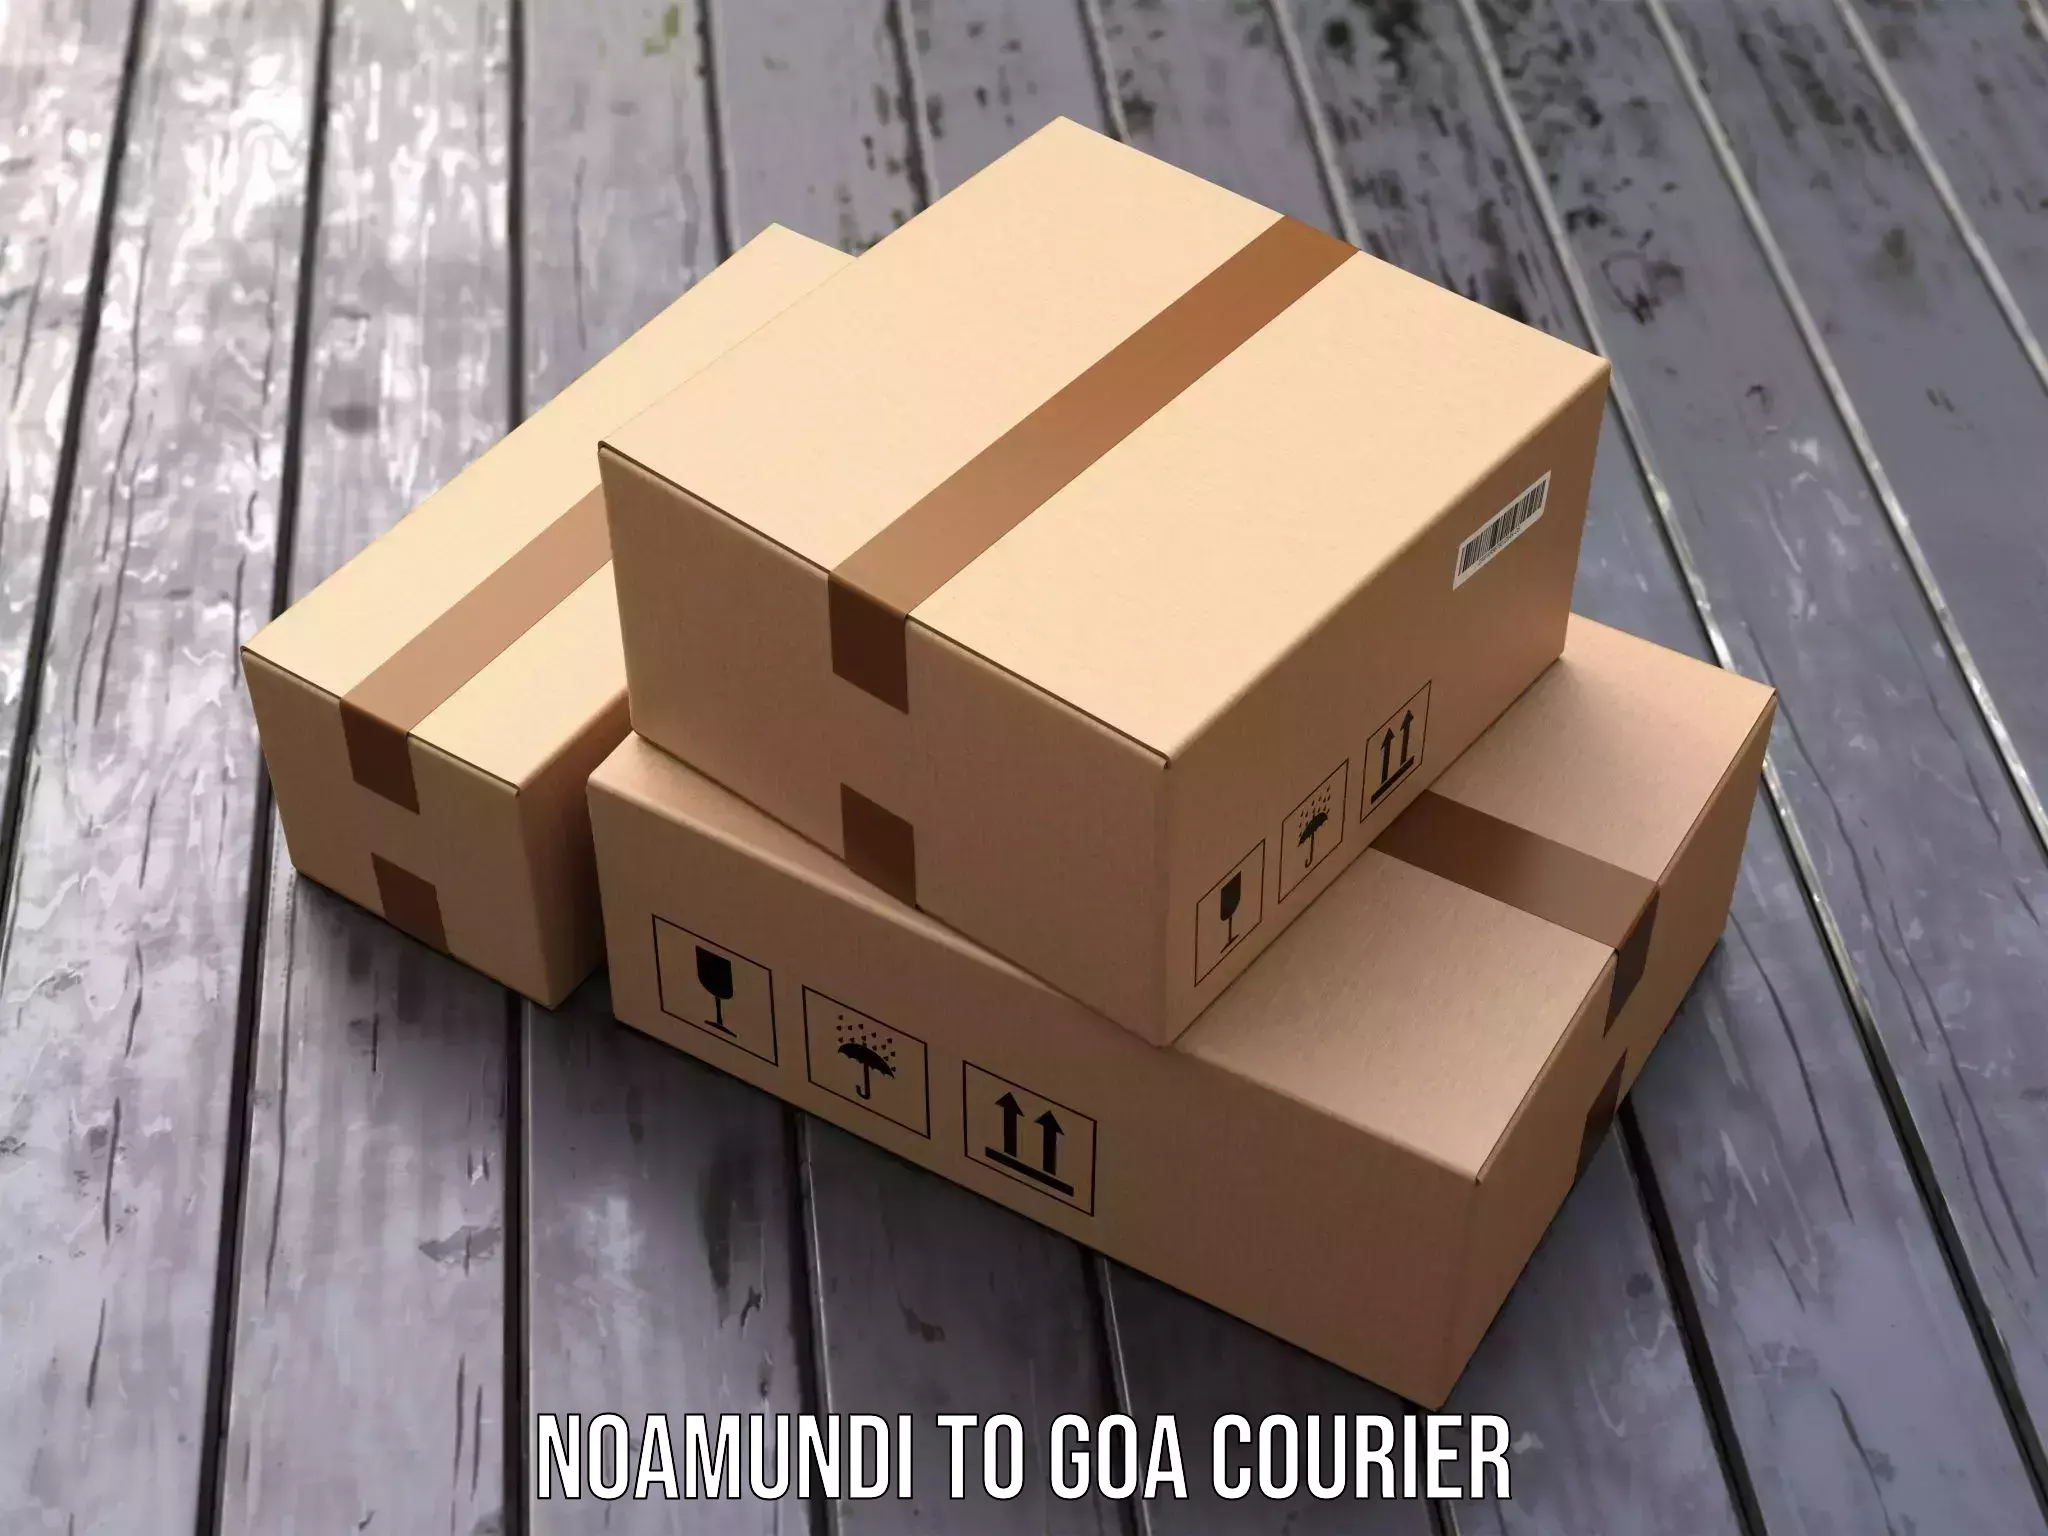 User-friendly delivery service Noamundi to NIT Goa